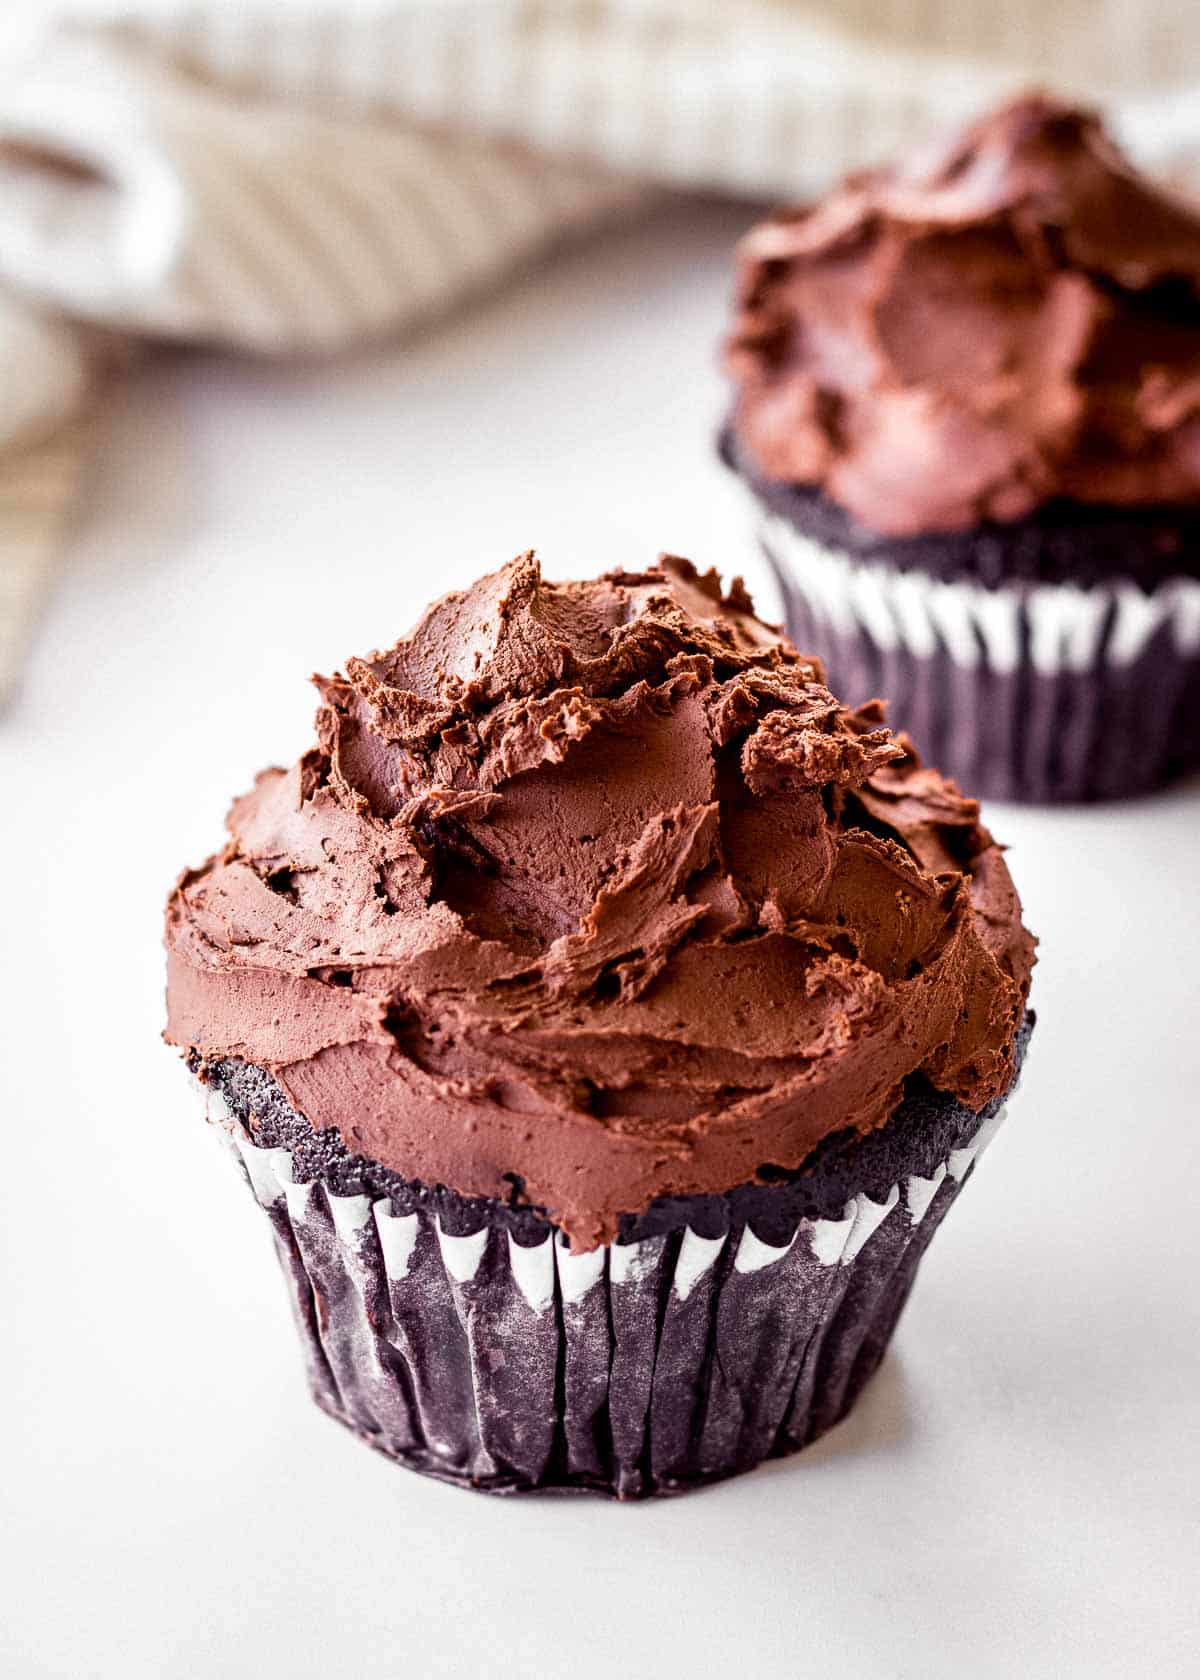 Δύο cupcakes σοκολάτας διακοσμημένα με vegan ganache μαύρης σοκολάτας.